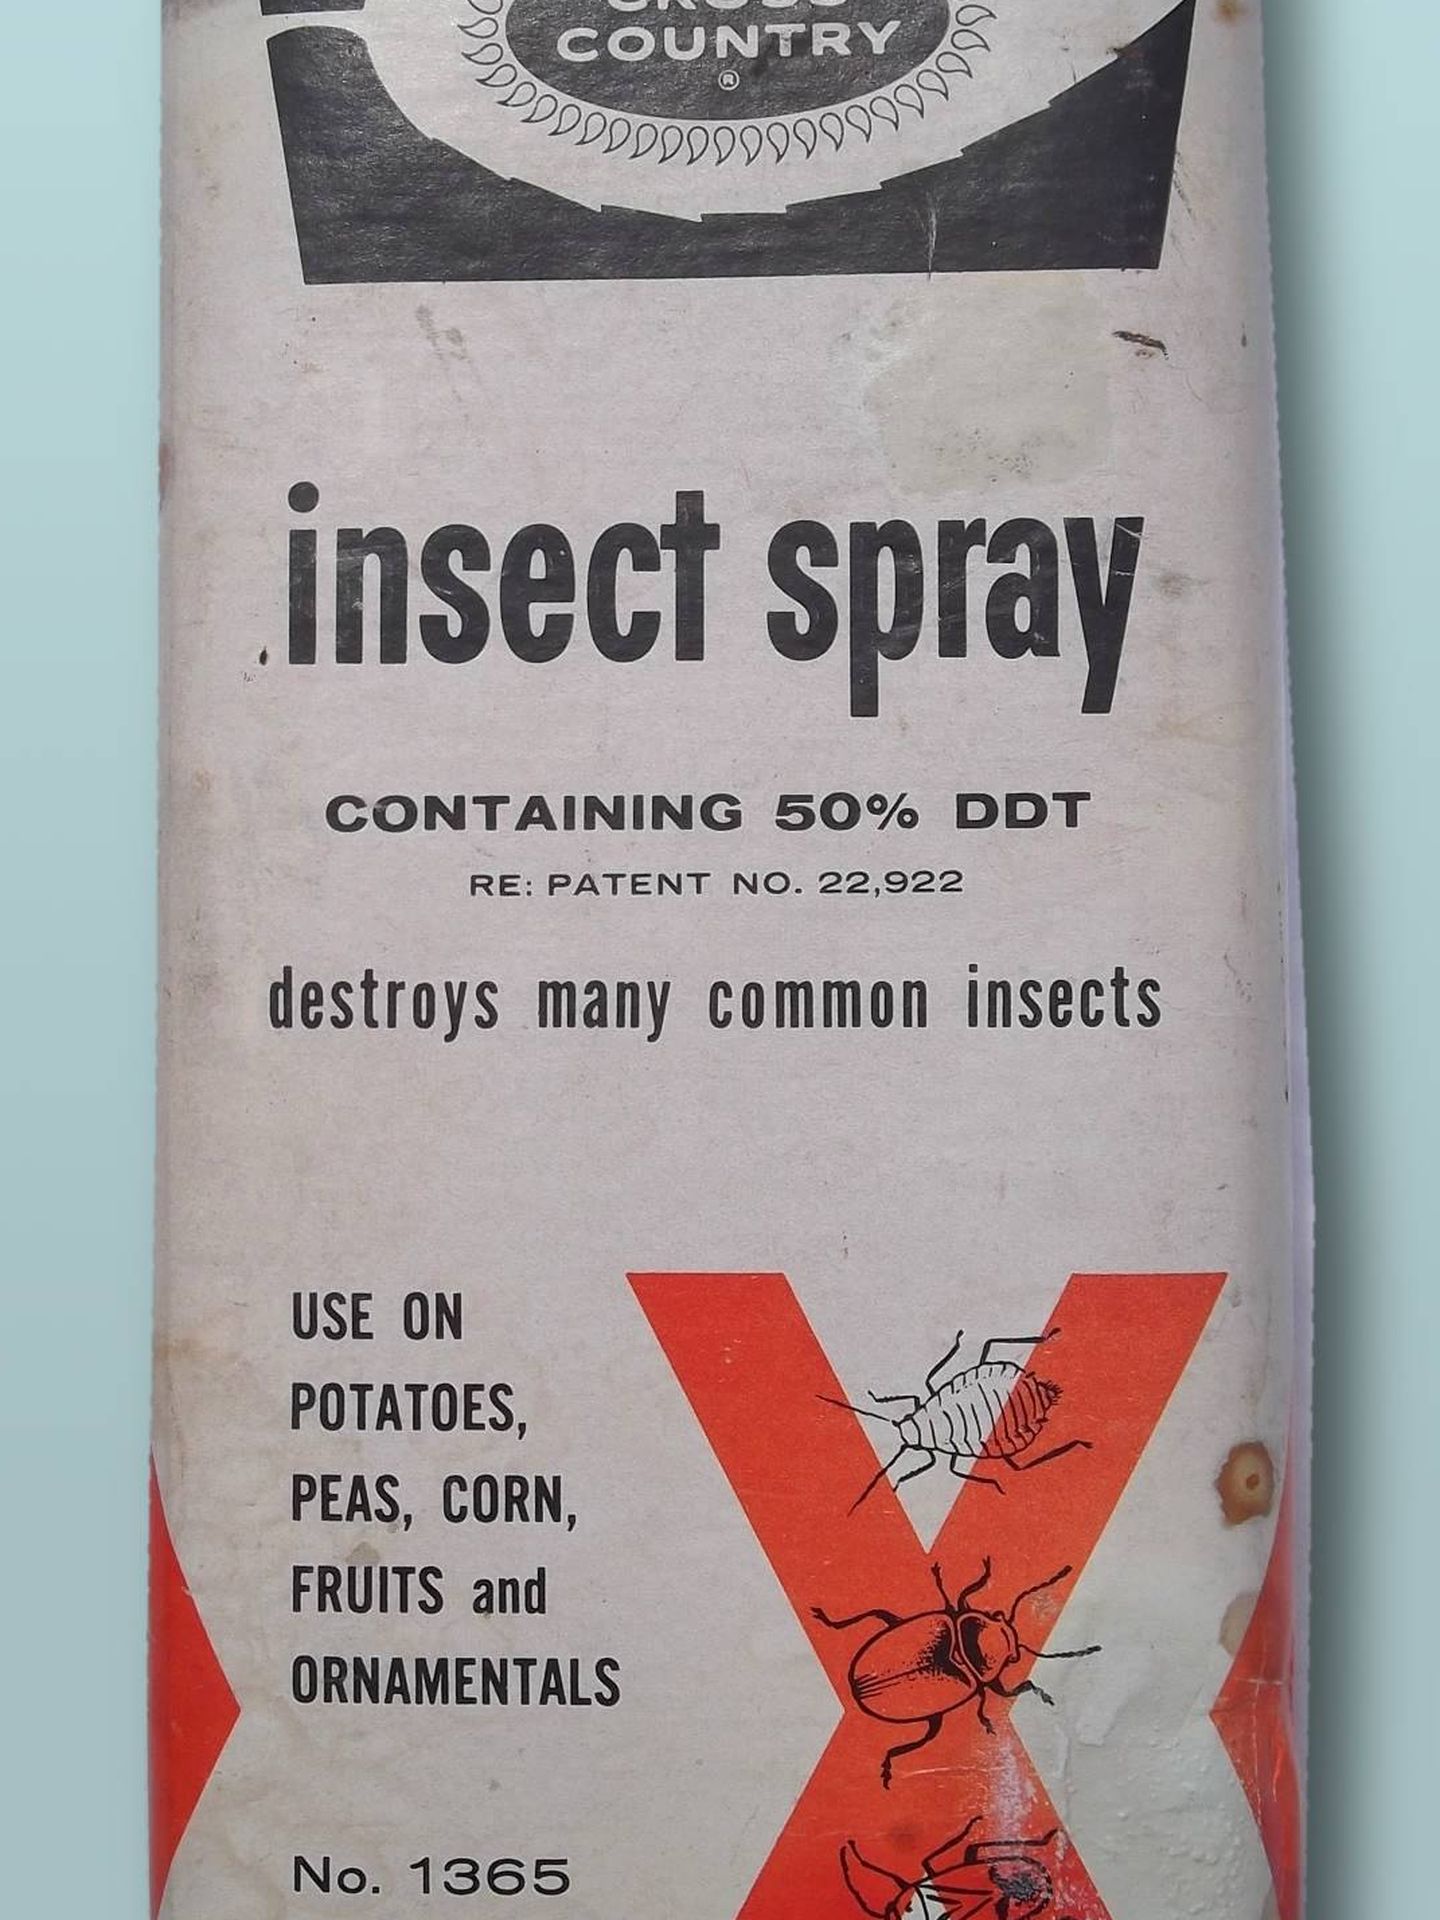 Un paquete con insecticida DDT. (Wikimedia Commons)